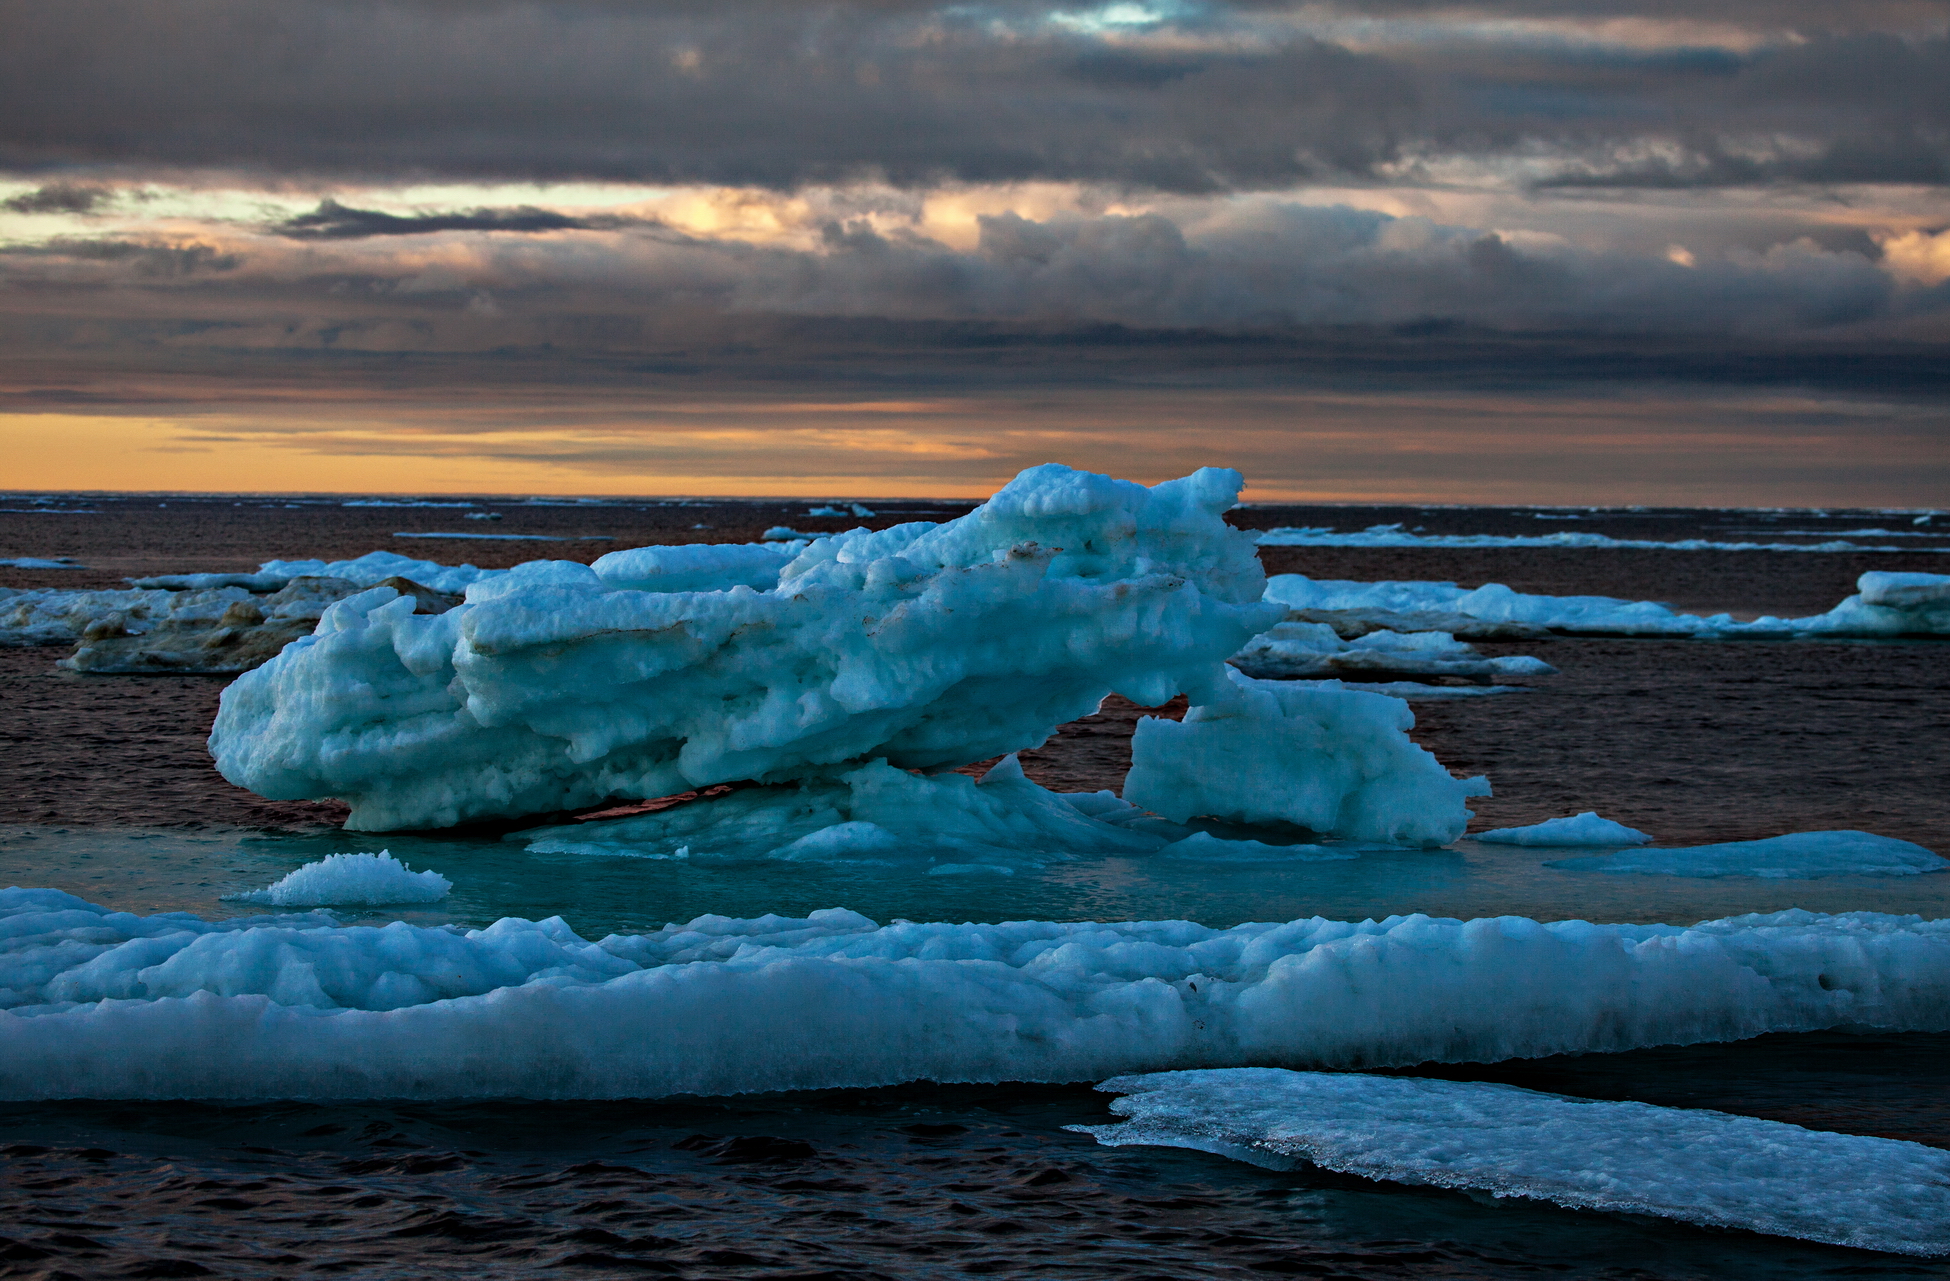 Арктика сегодня. Впервые изучено вертикальное распространение жизни в Северном Ледовитом океане